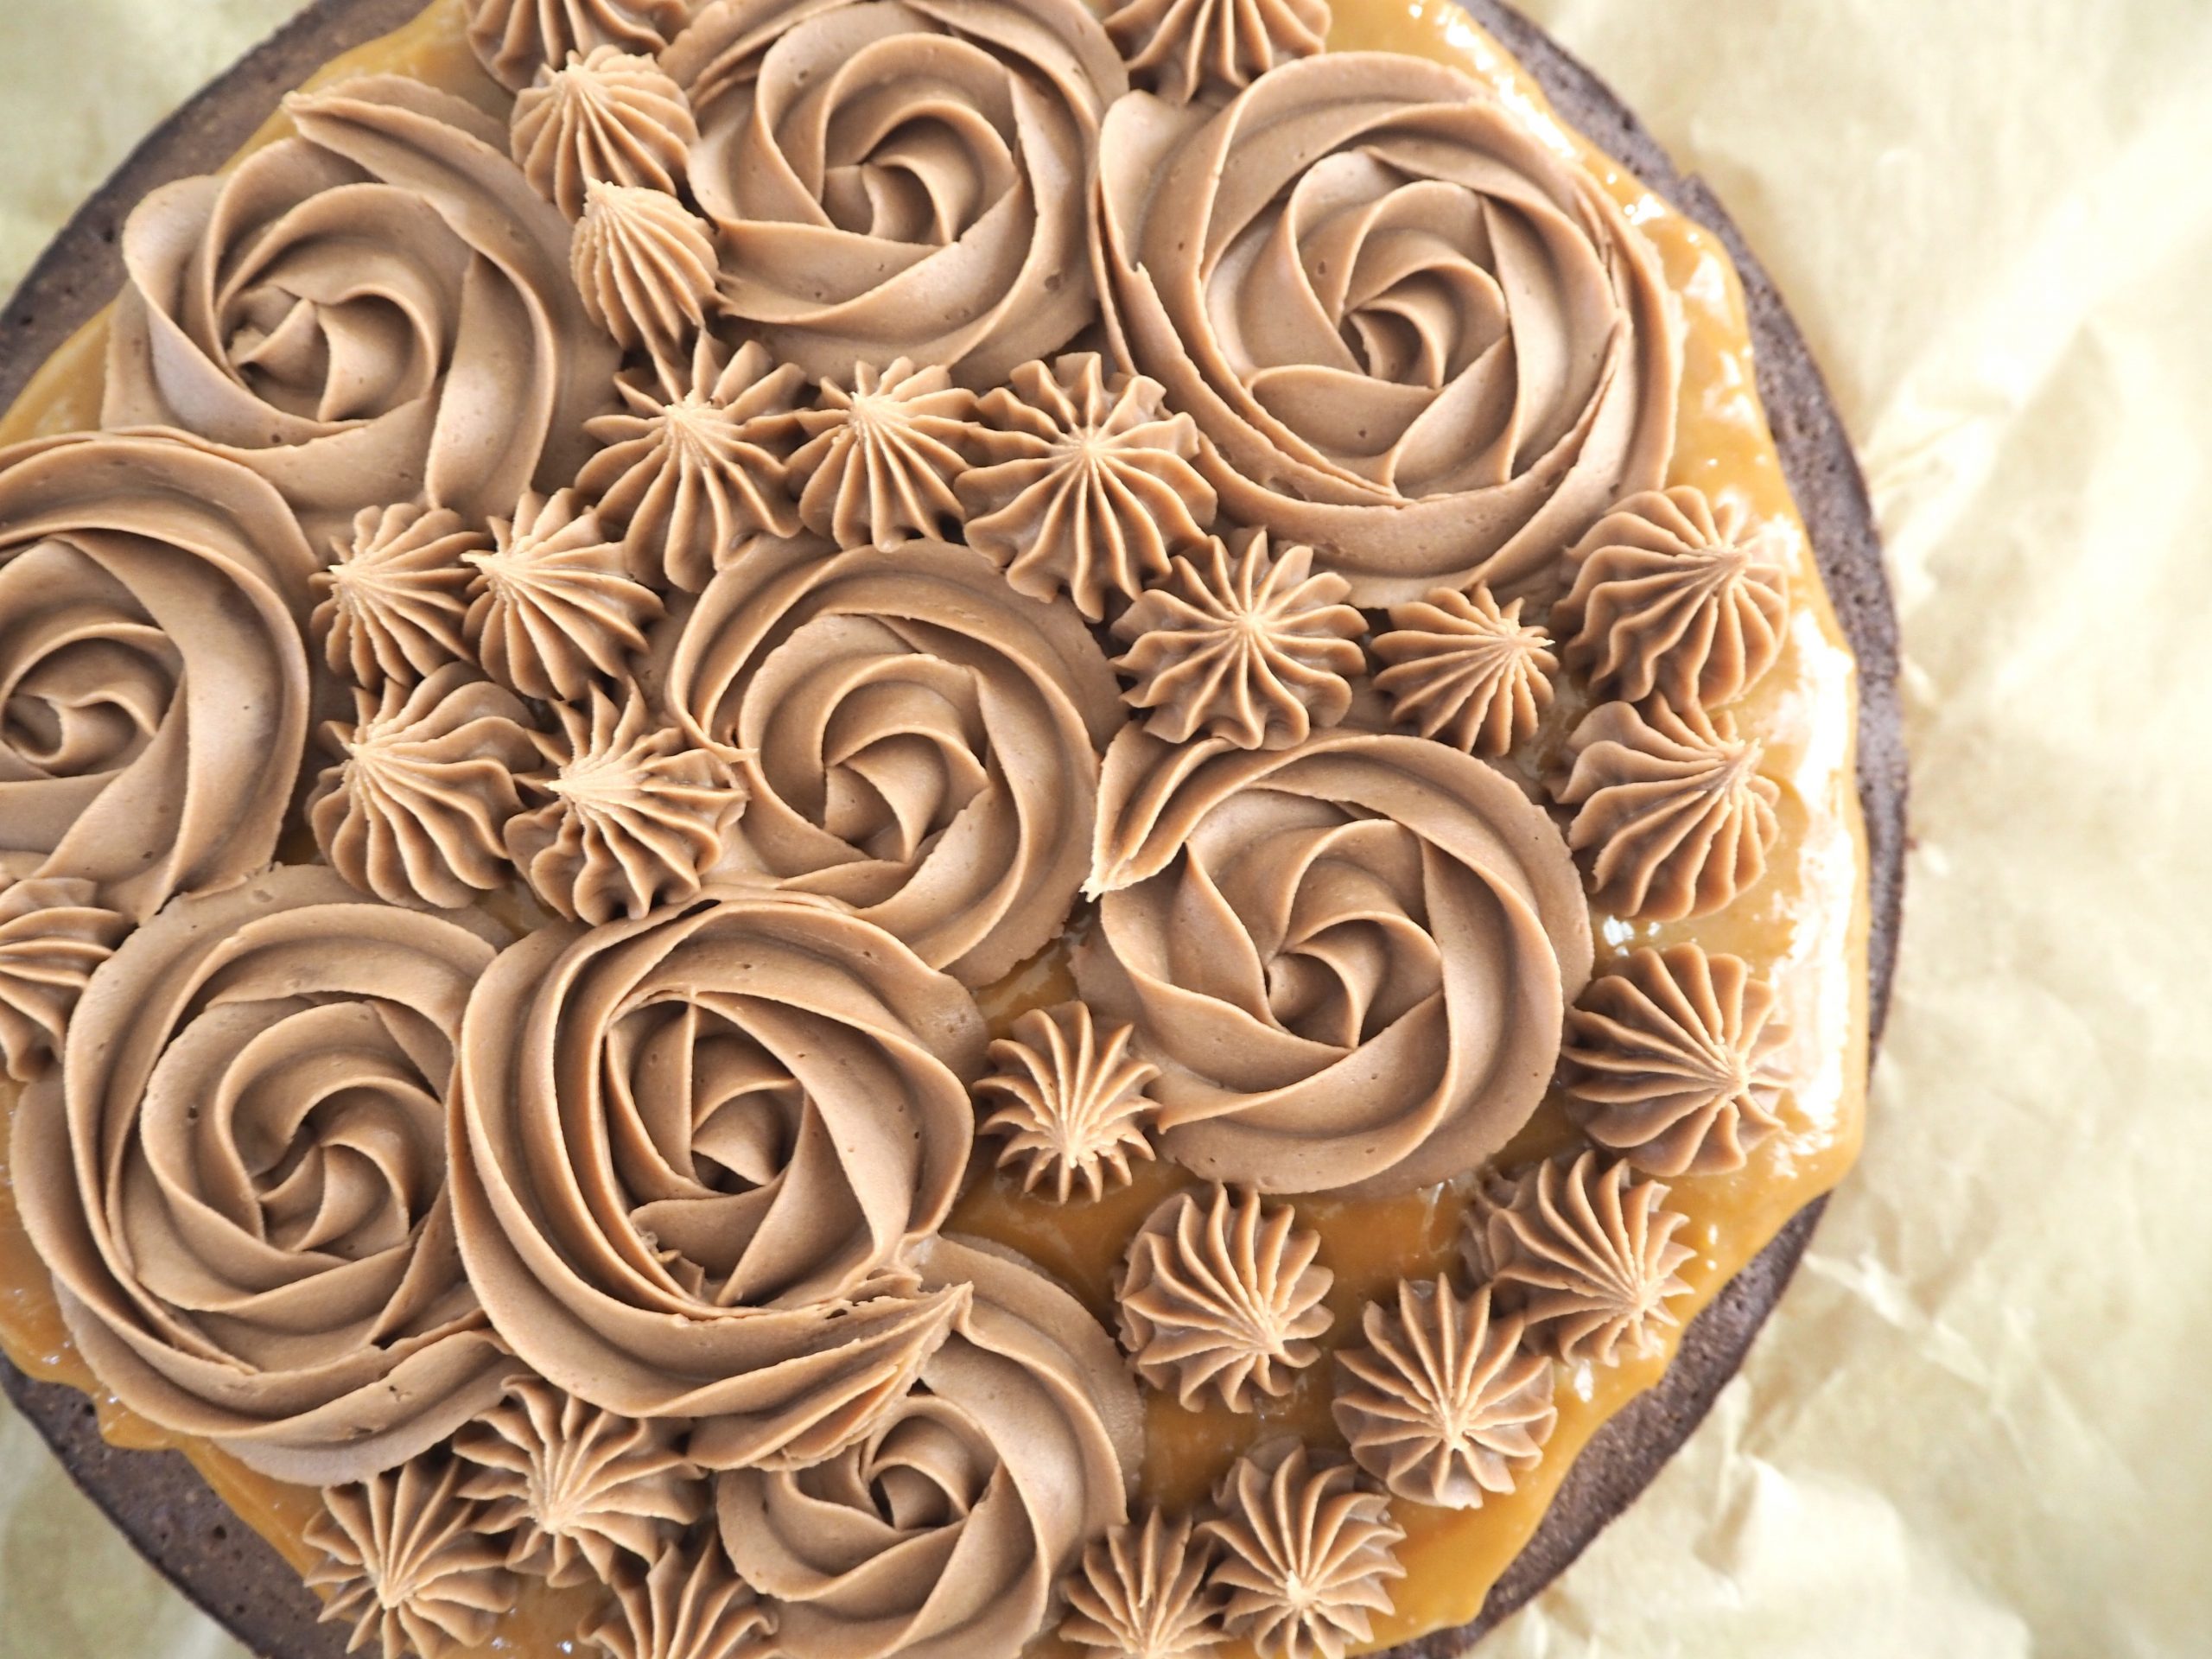 Brownie med karamel og Nutella-frosting - Cakewoman.dk